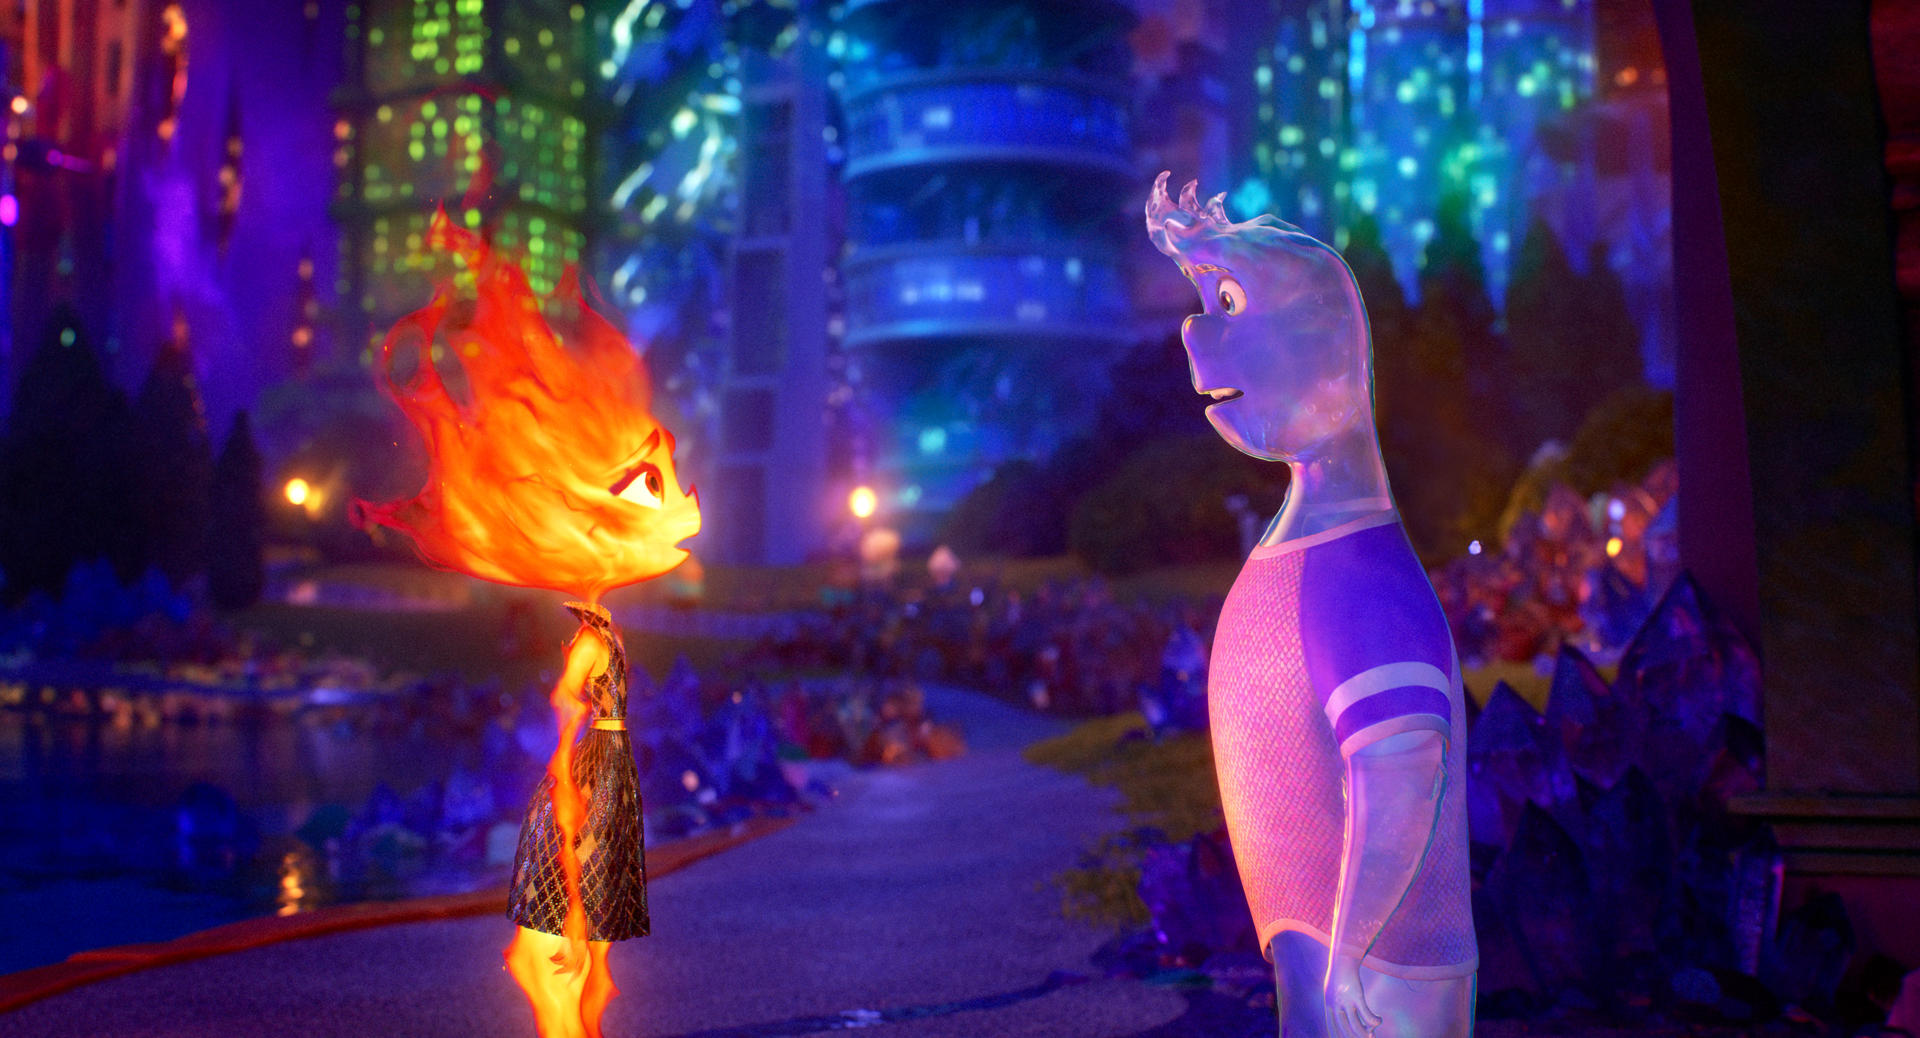 “Elemental”, la apuesta tecnológica más ambiciosa de Pixar también busca llegar al corazón